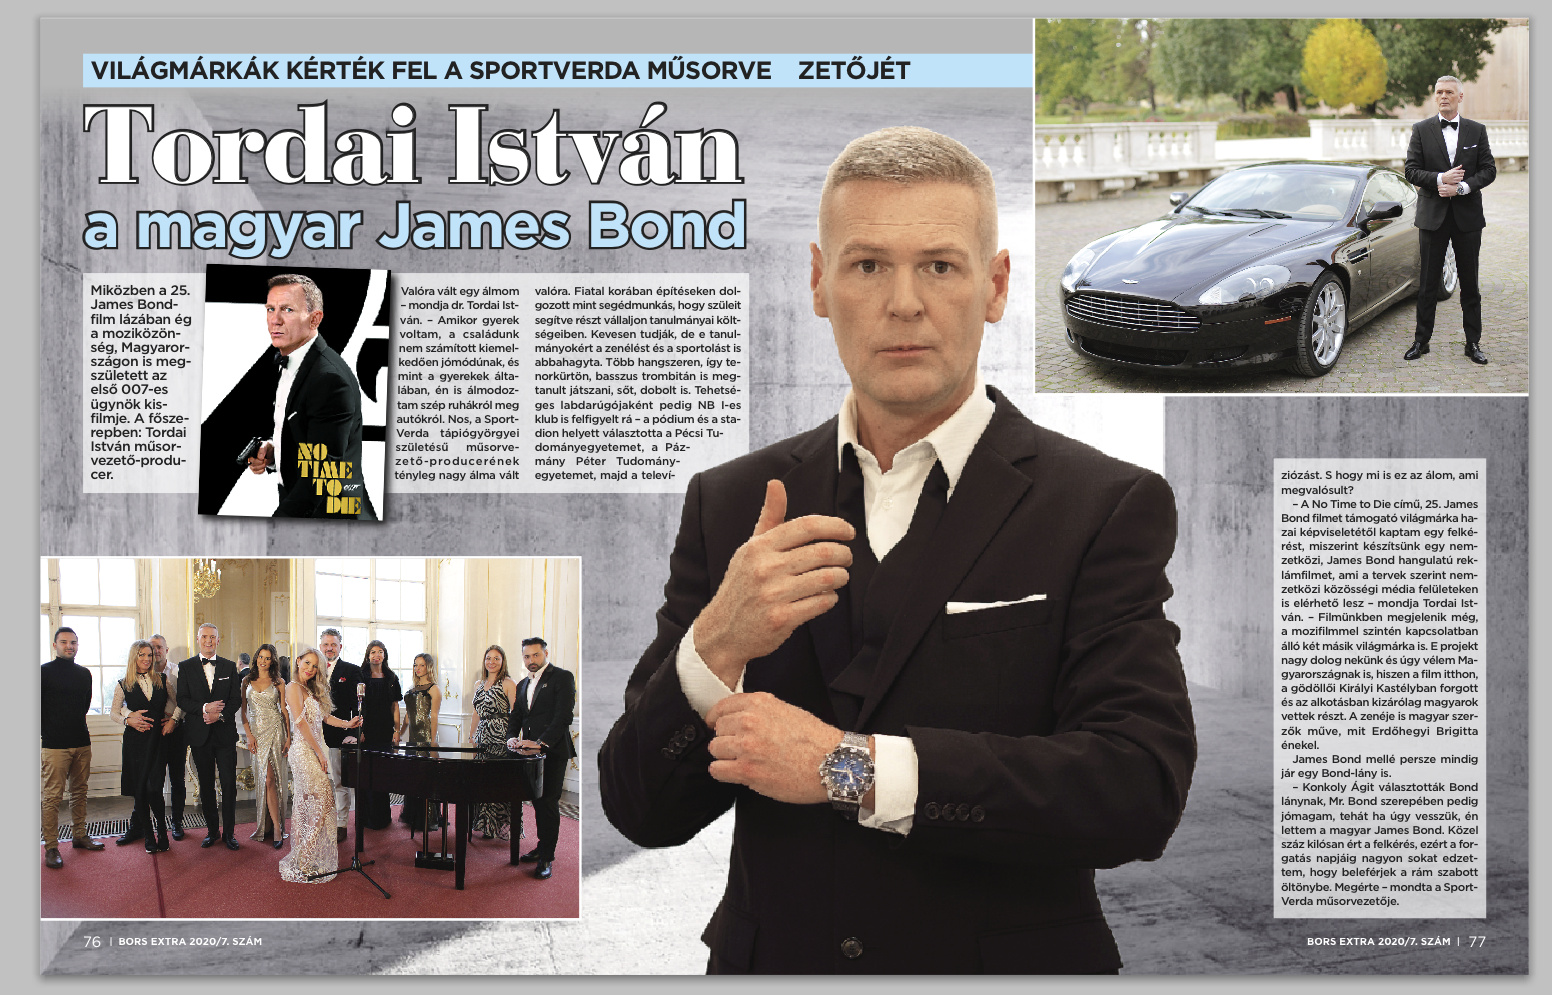 Tordai István műsorvezető a "magyar James Bond" Bors Extra